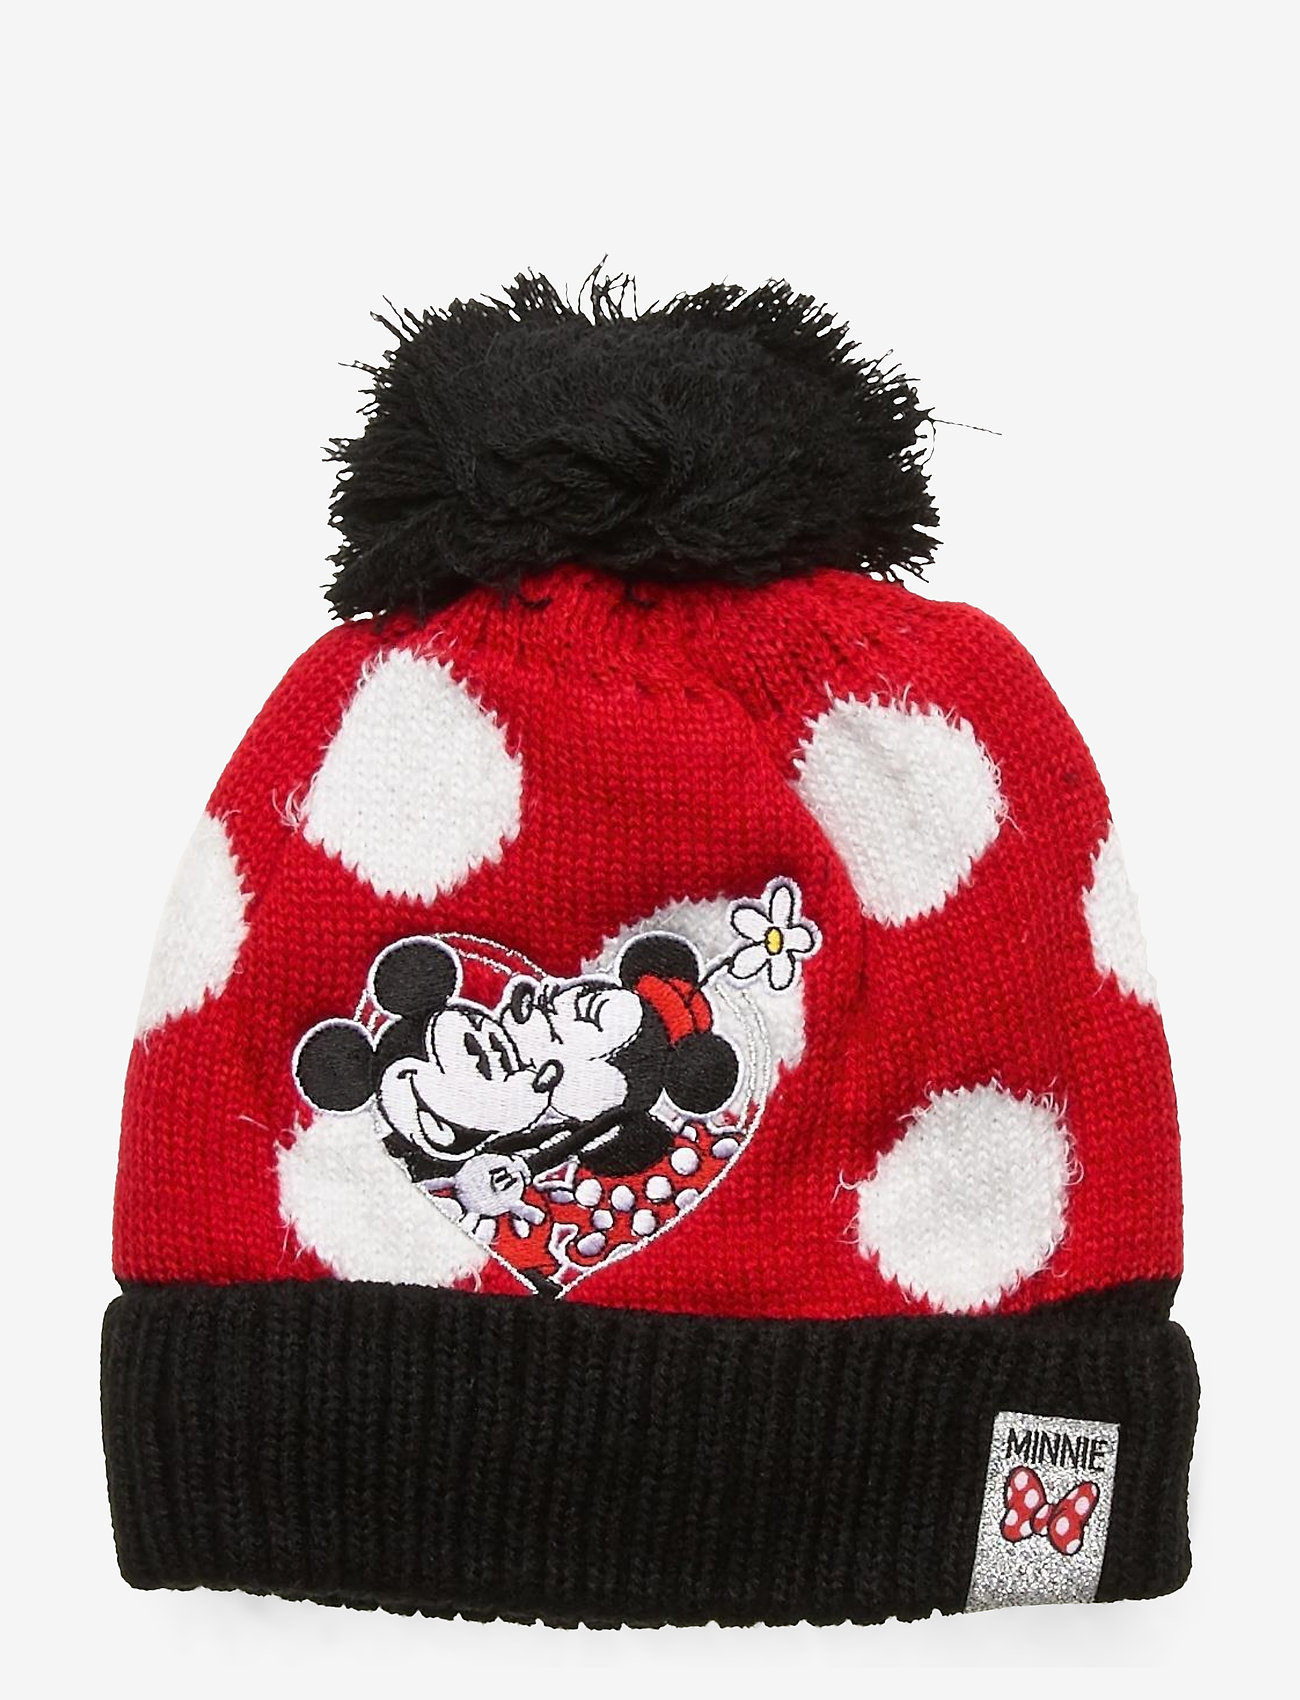 Disney - CAP - madalaimad hinnad - red - 0